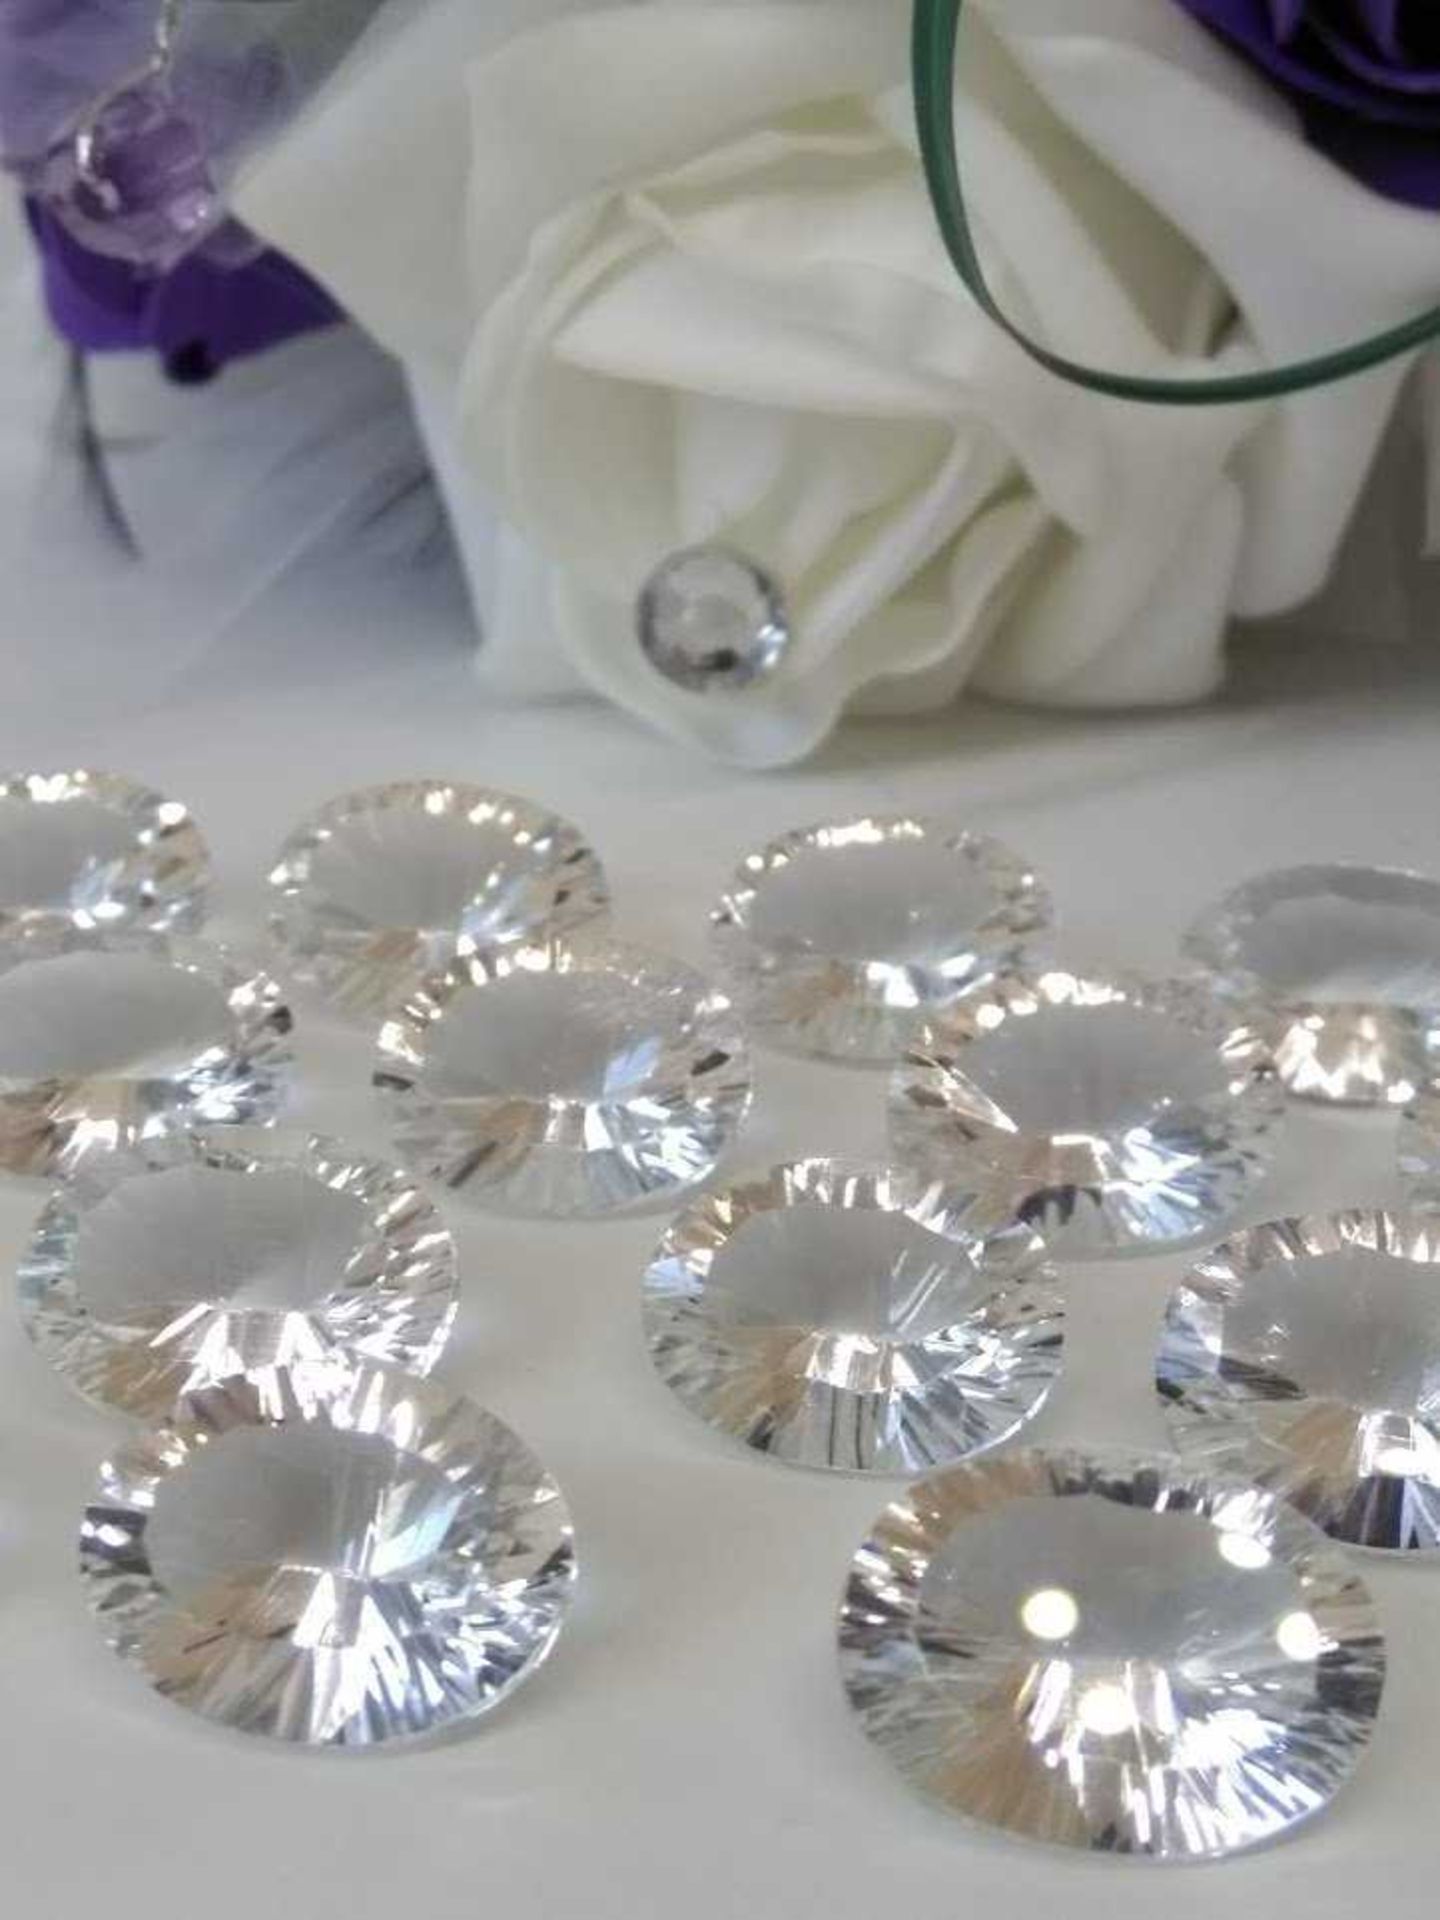 Amazing VVS Clarity 150.50 Carat x 18 Pieces - Untreated Natural White Quartz gemstones - Concave - Image 2 of 2